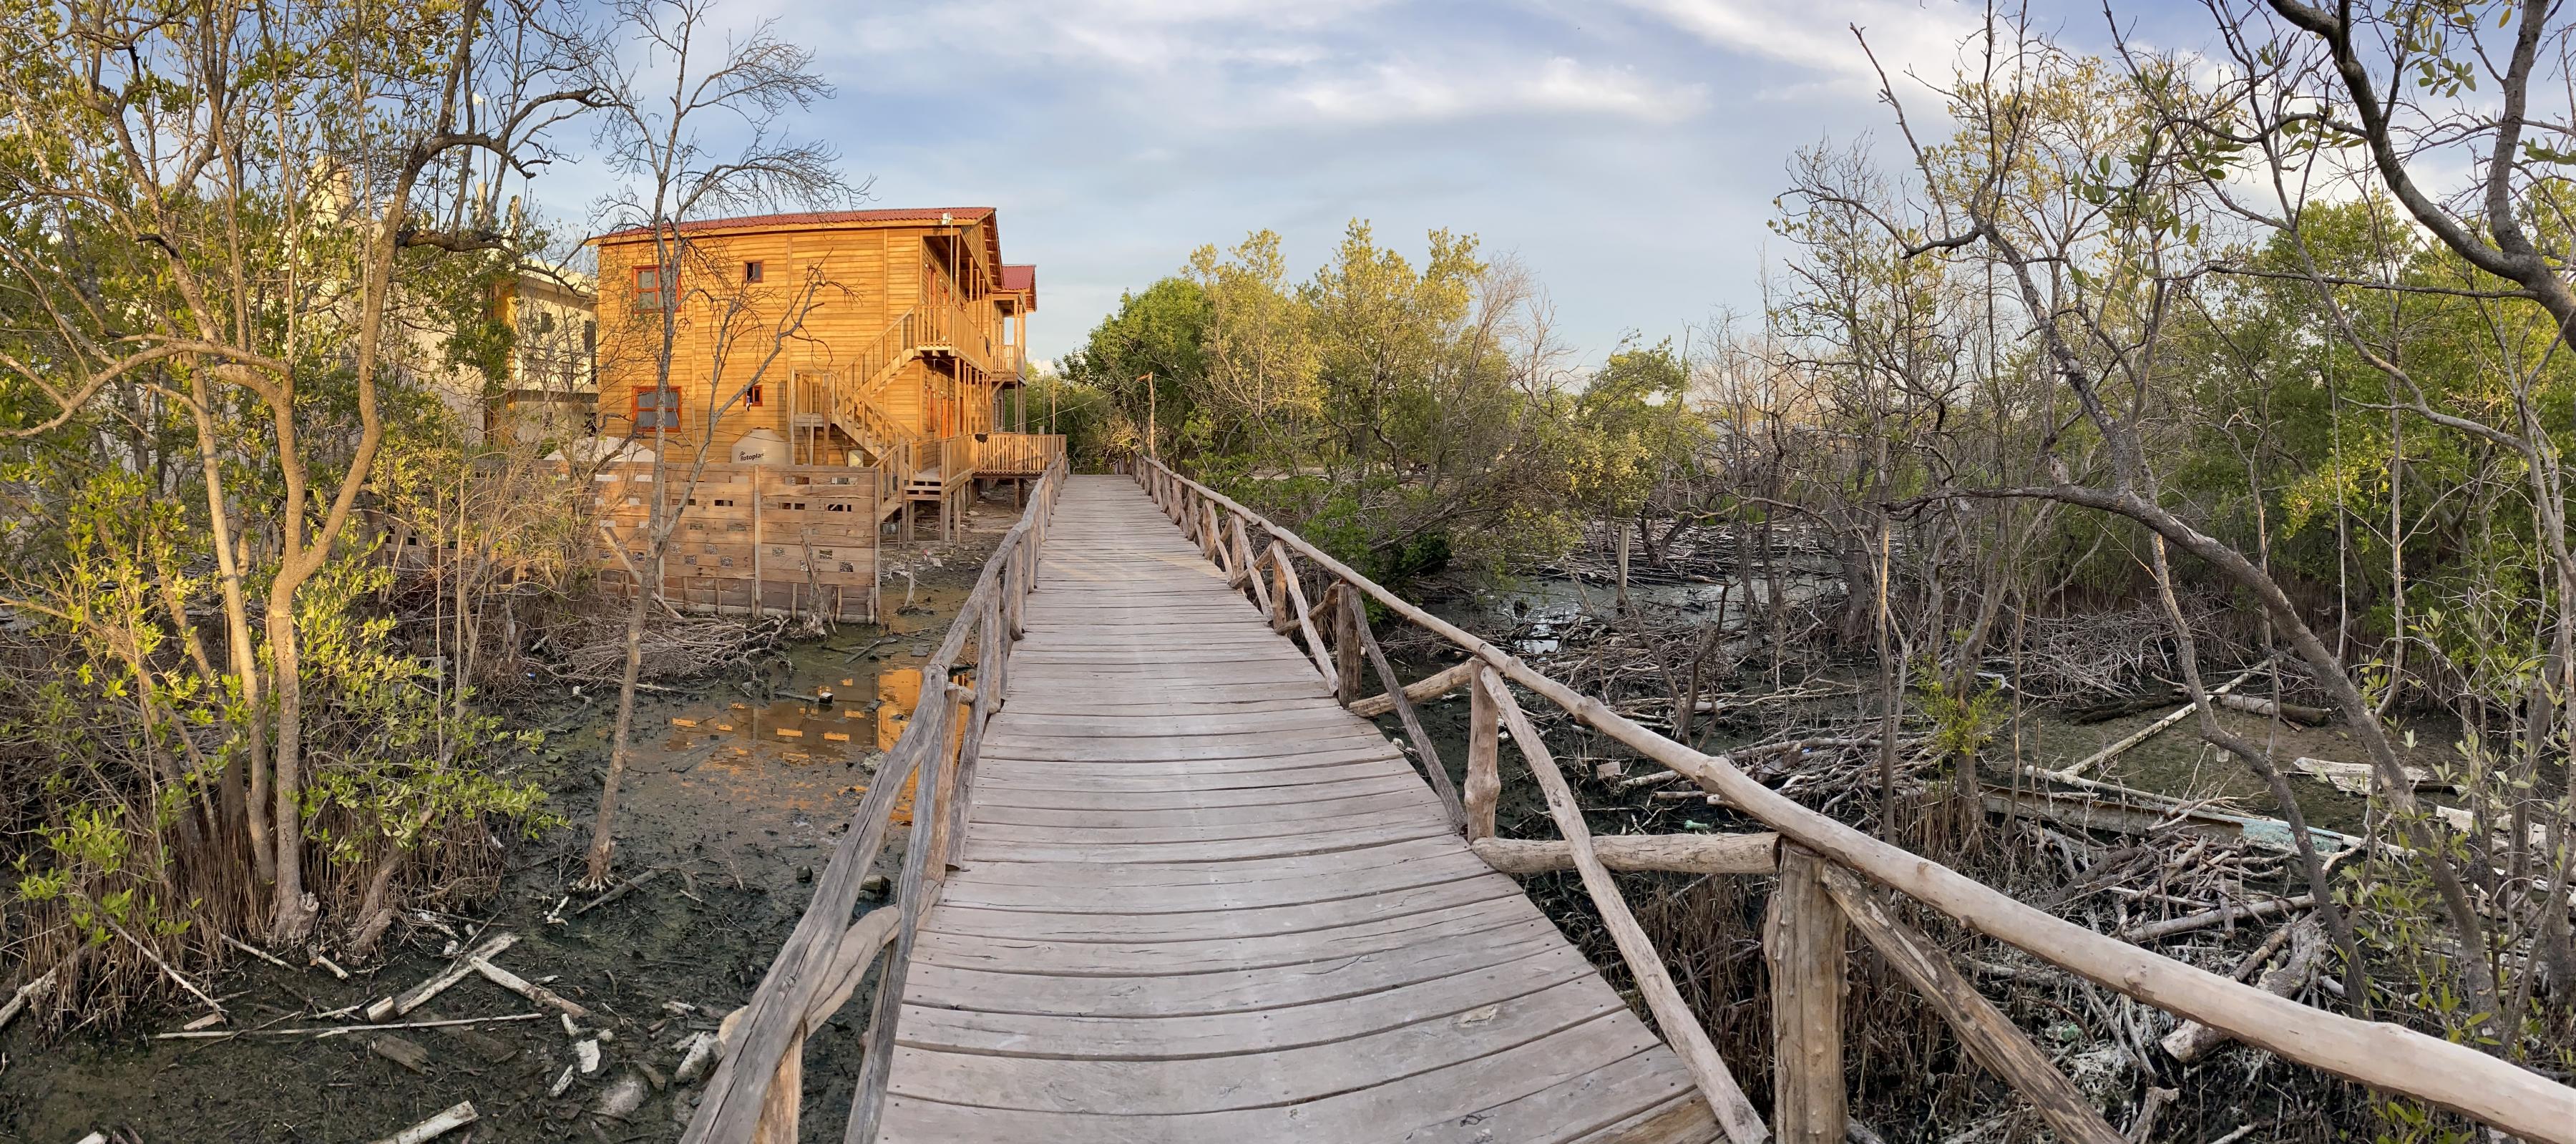 Eine Brücke, rechts zerstörte Mangroven, links ein Holzgebäude